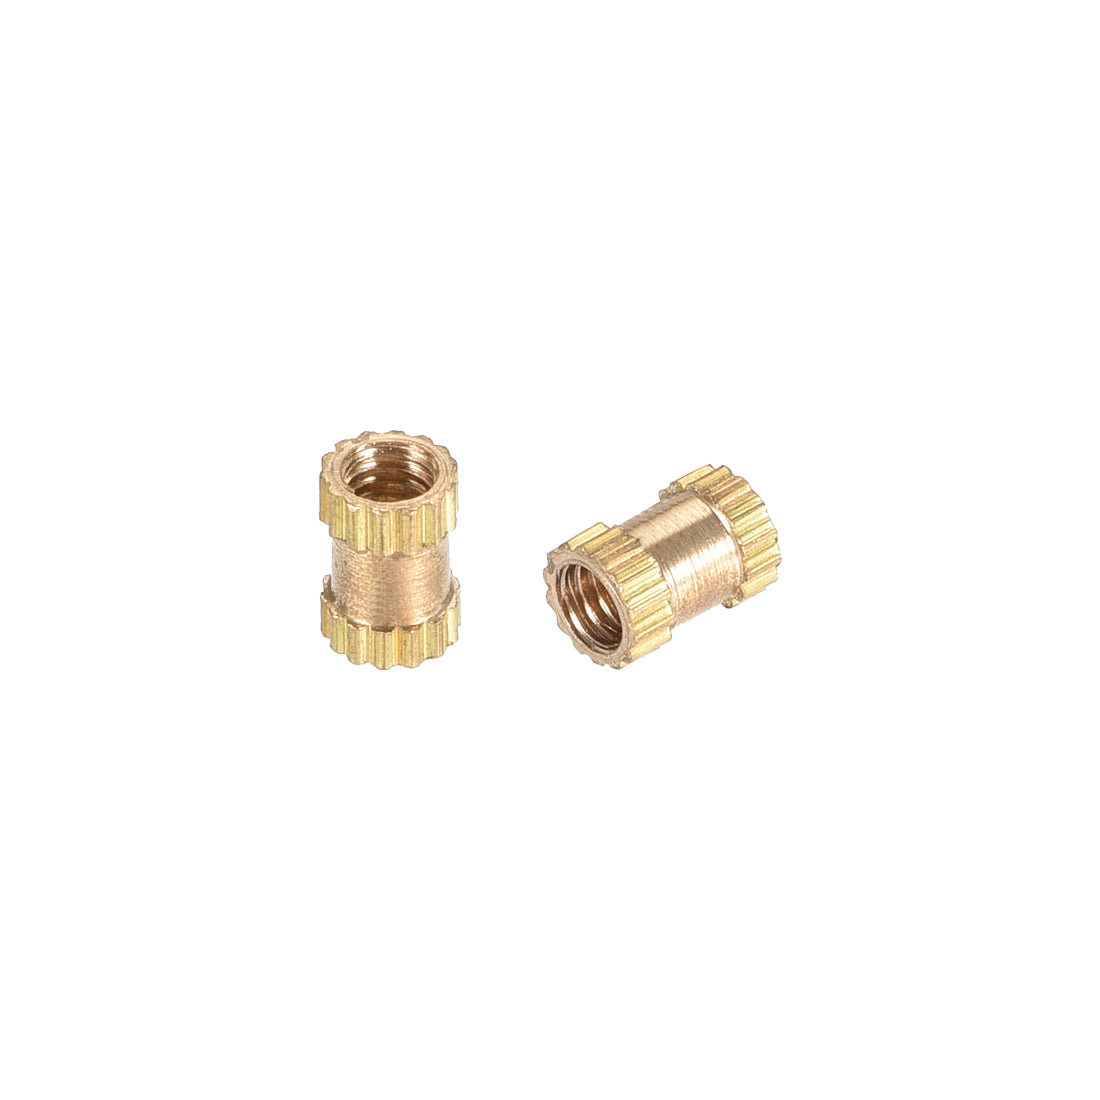 uxcell Uxcell Knurled Insert Nuts, M2.5 x 5mm(L) x 3.5mm(OD) Female Thread Brass Embedment Assortment Kit, 30 Pcs